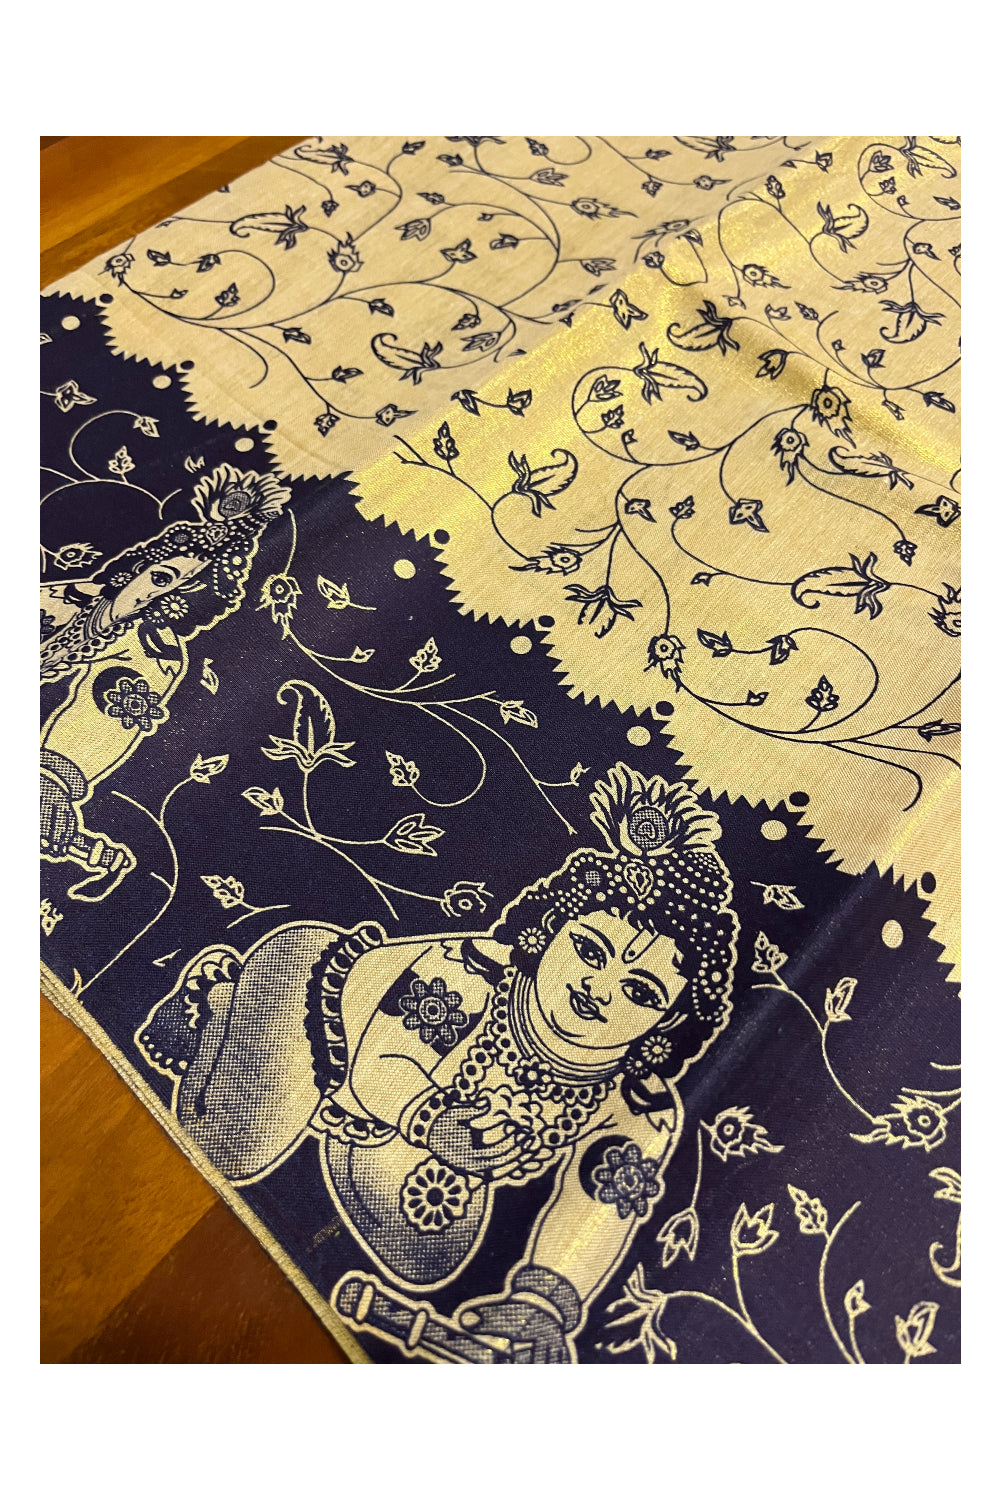 Kerala Tissue Block Printed Pavada and Dark Blue Designer Blouse Material for Kids/Girls 4.3 Meters